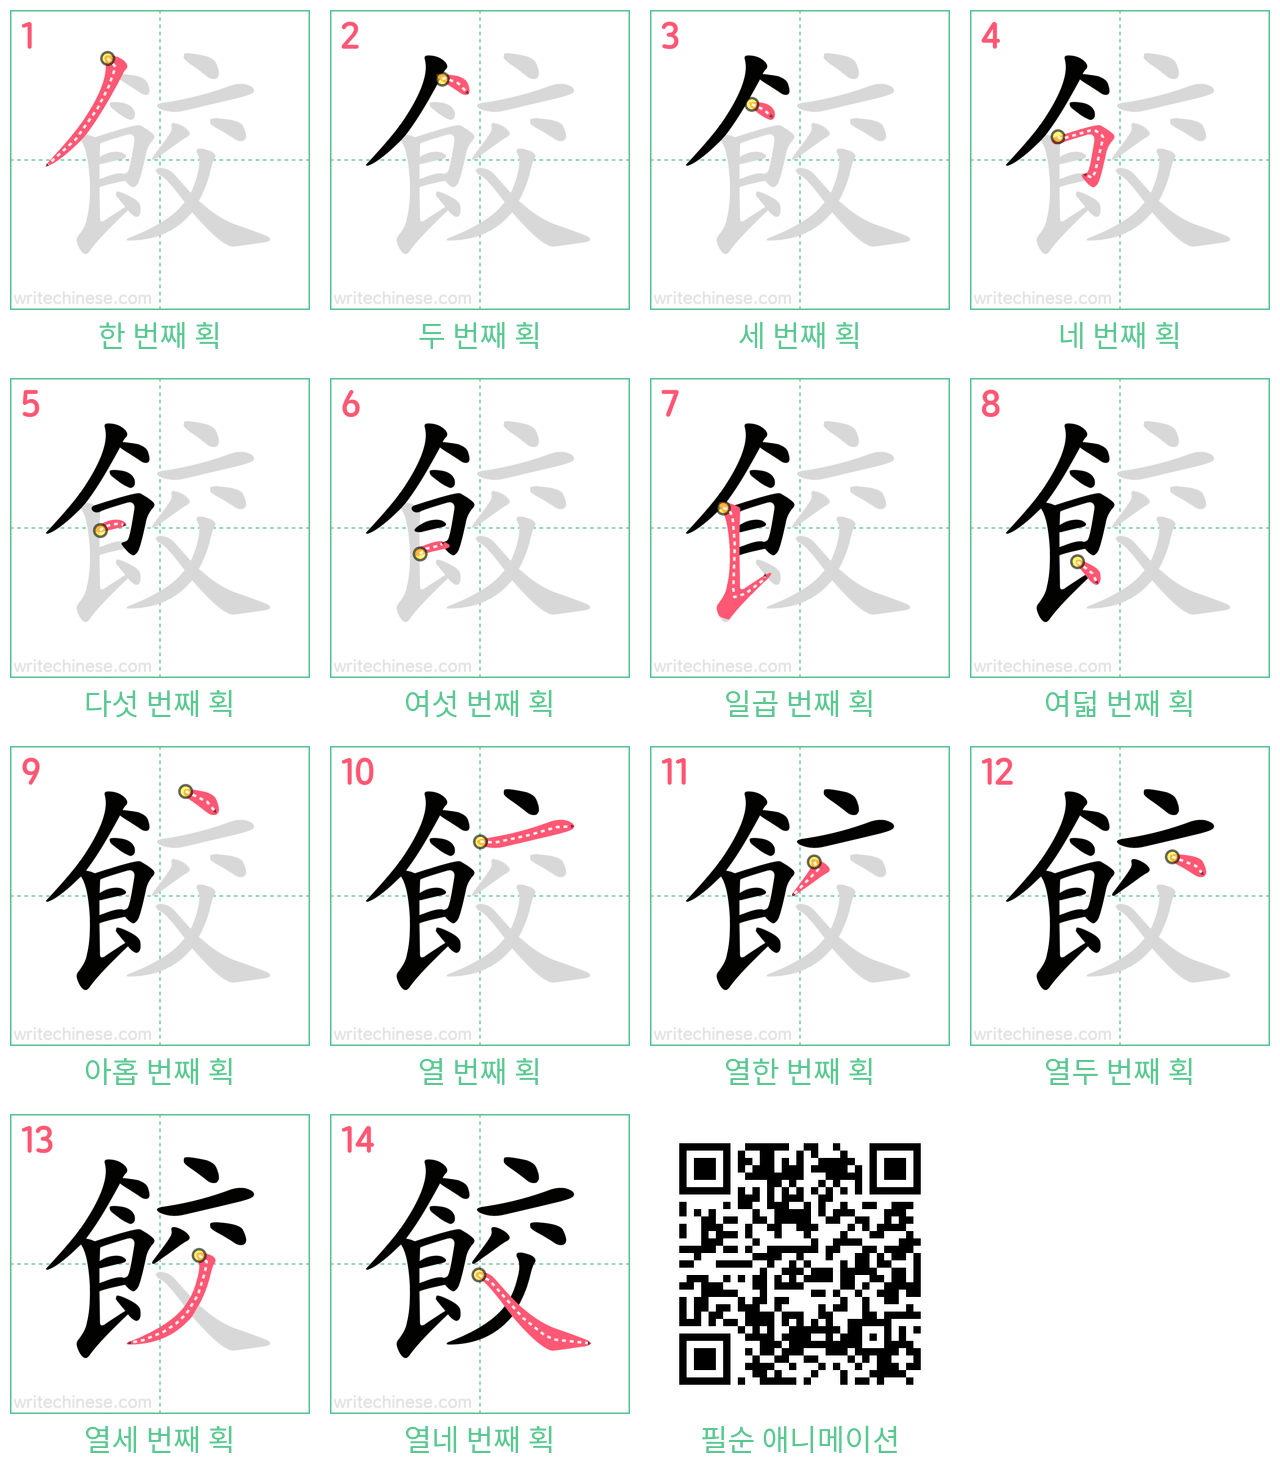 餃 step-by-step stroke order diagrams